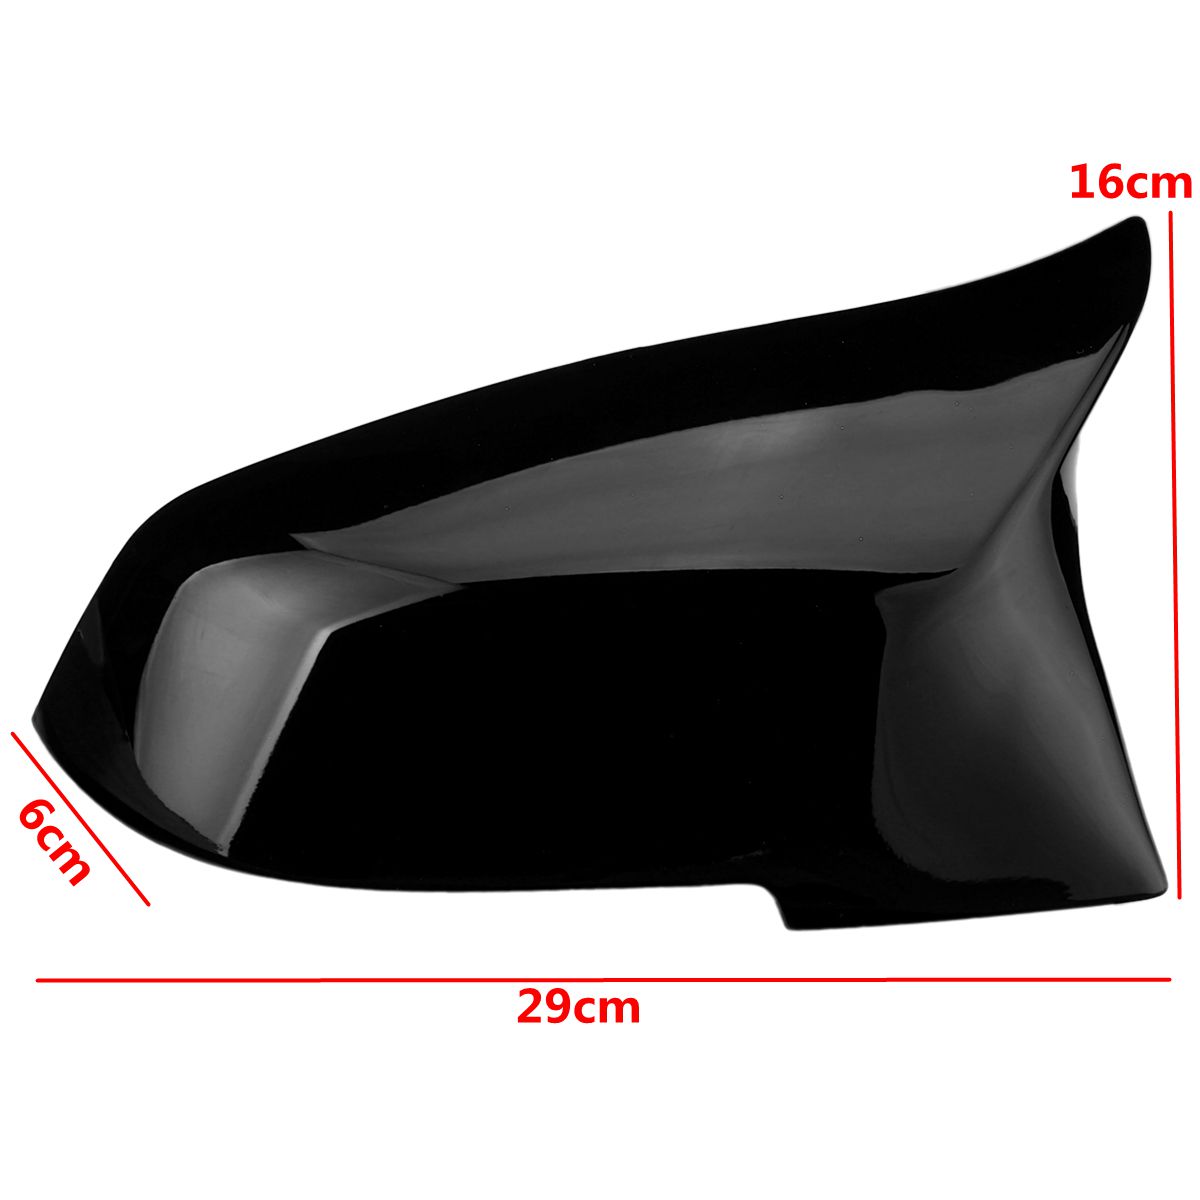 2Pcs-Gloss-Black-Car-Rear-View-Mirror-Cover-Cap-For-BMW-F20-F21-F22-F30-F32-F36-X1-F87-M3-1662640